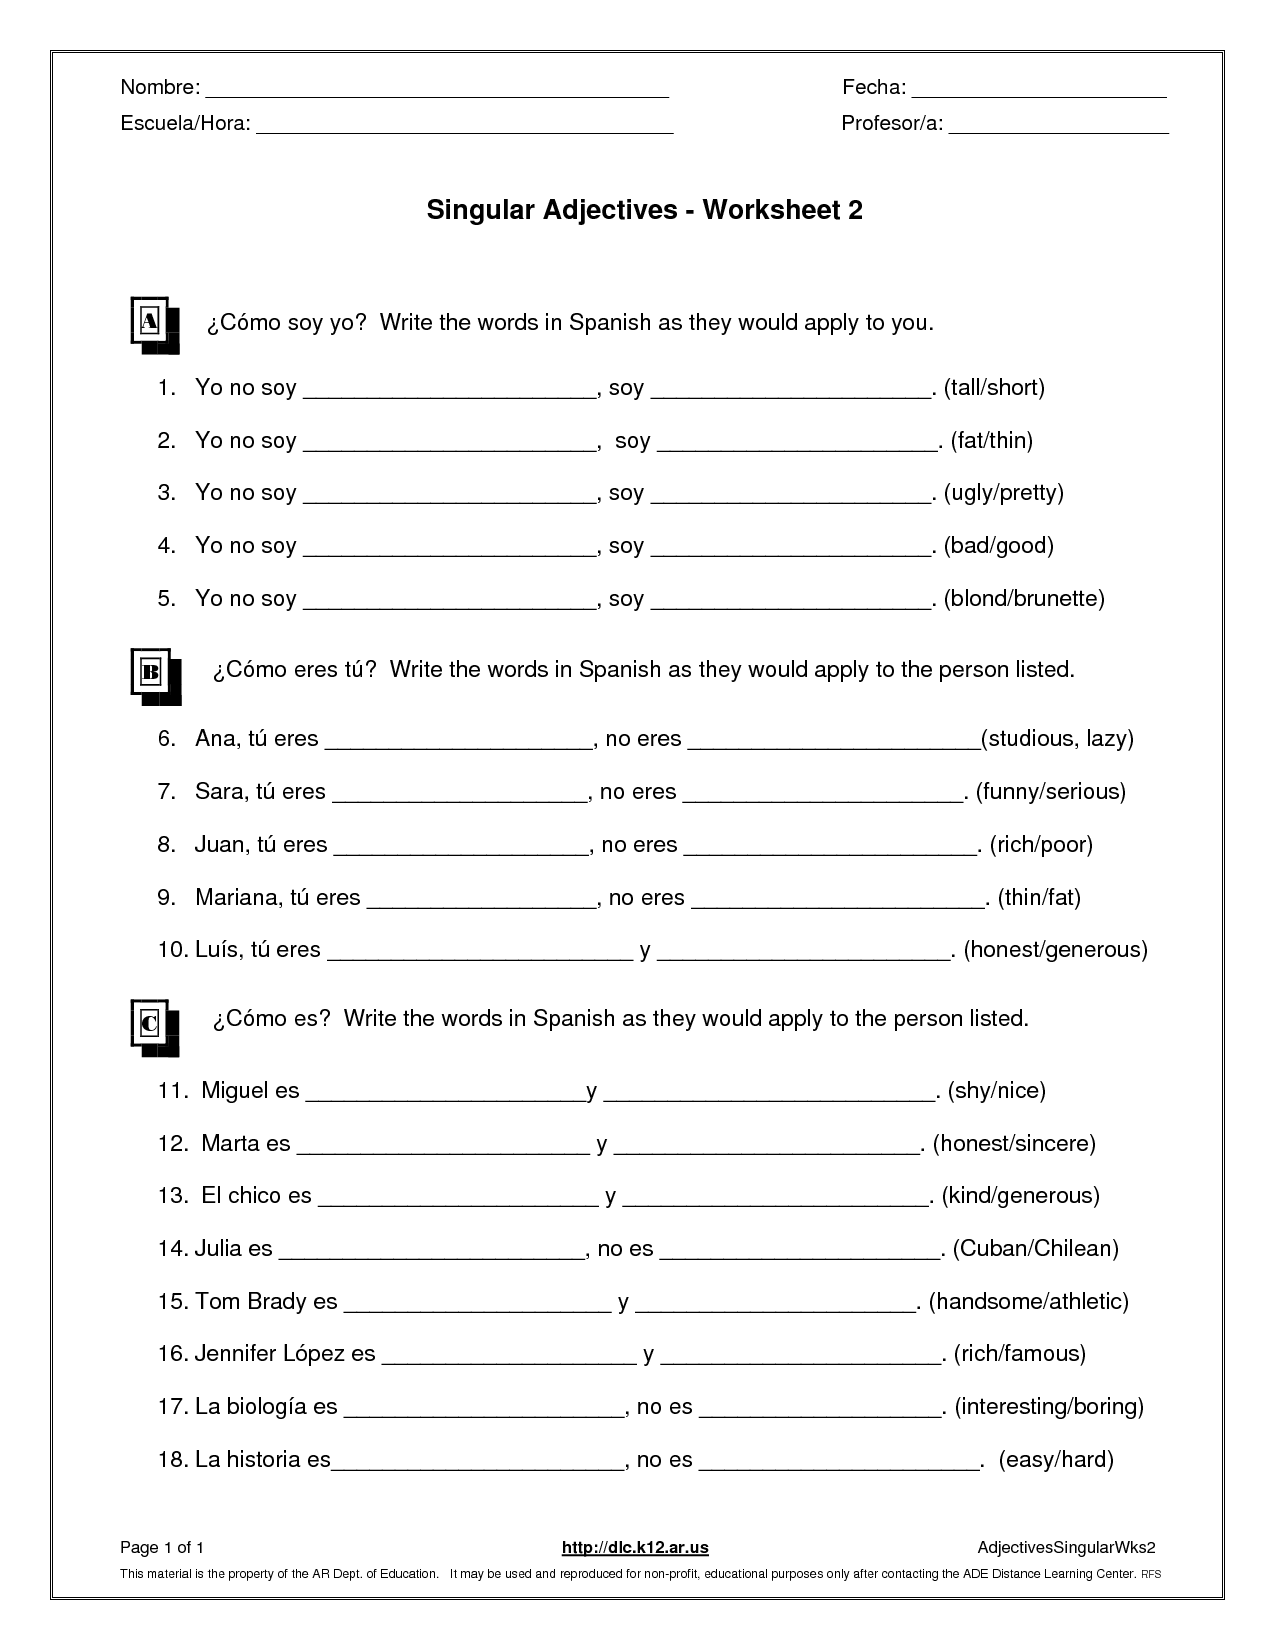 18 Best Images Of Singular Plural Worksheets Grade 3 Singular And Plural Nouns Worksheets